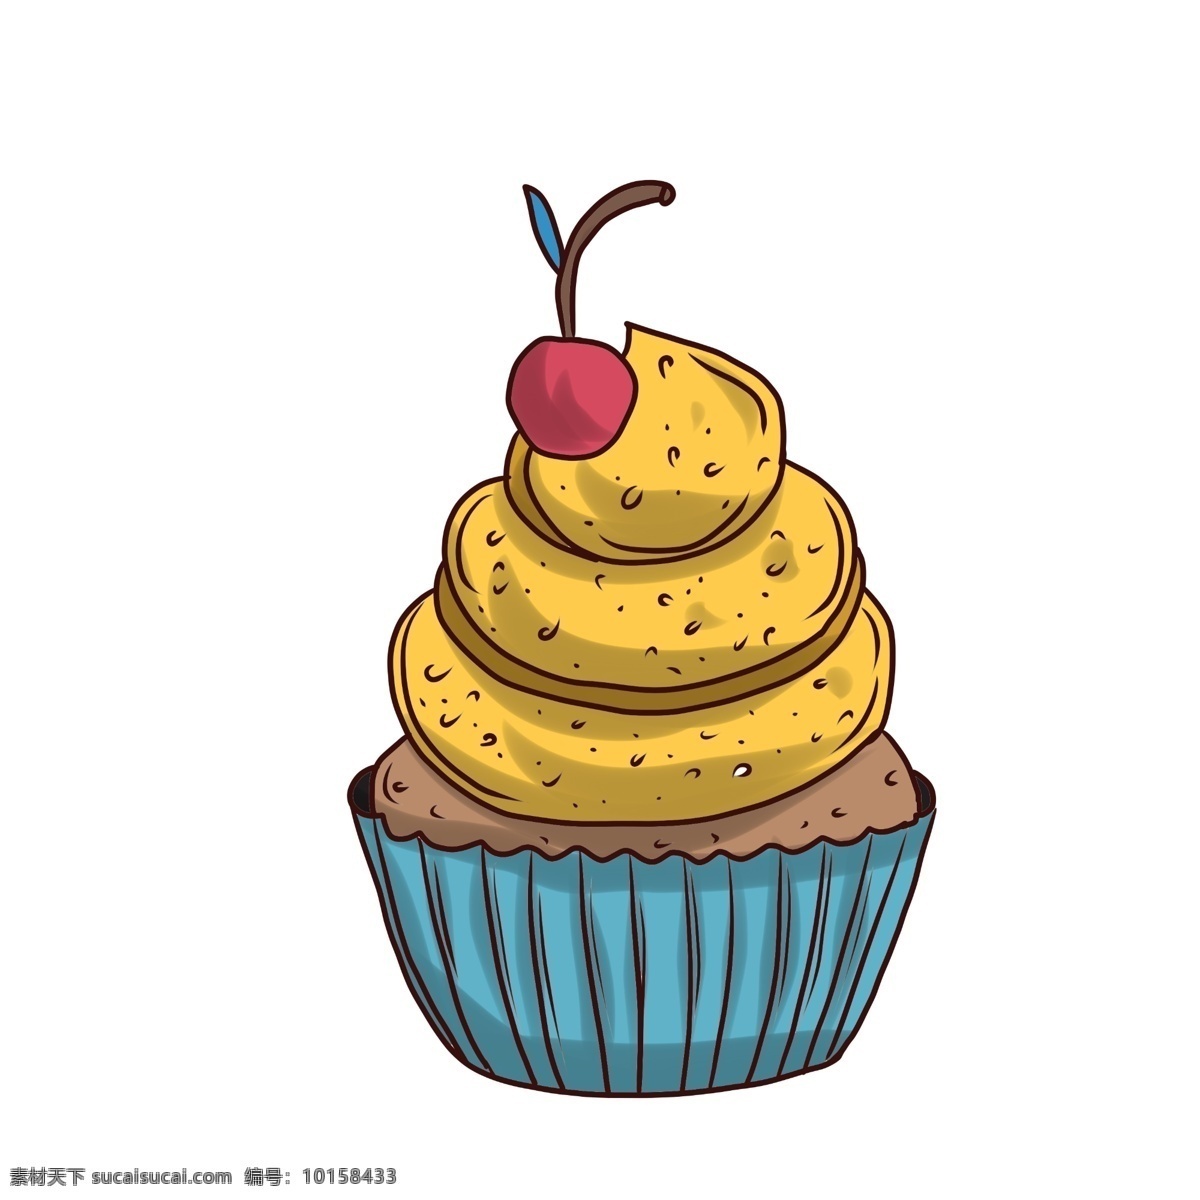 巧克力 纸杯 蛋糕 插画 纸杯蛋糕 樱桃 装饰 西式糕点 小吃快餐食品 黄色奶油 创意美食插画